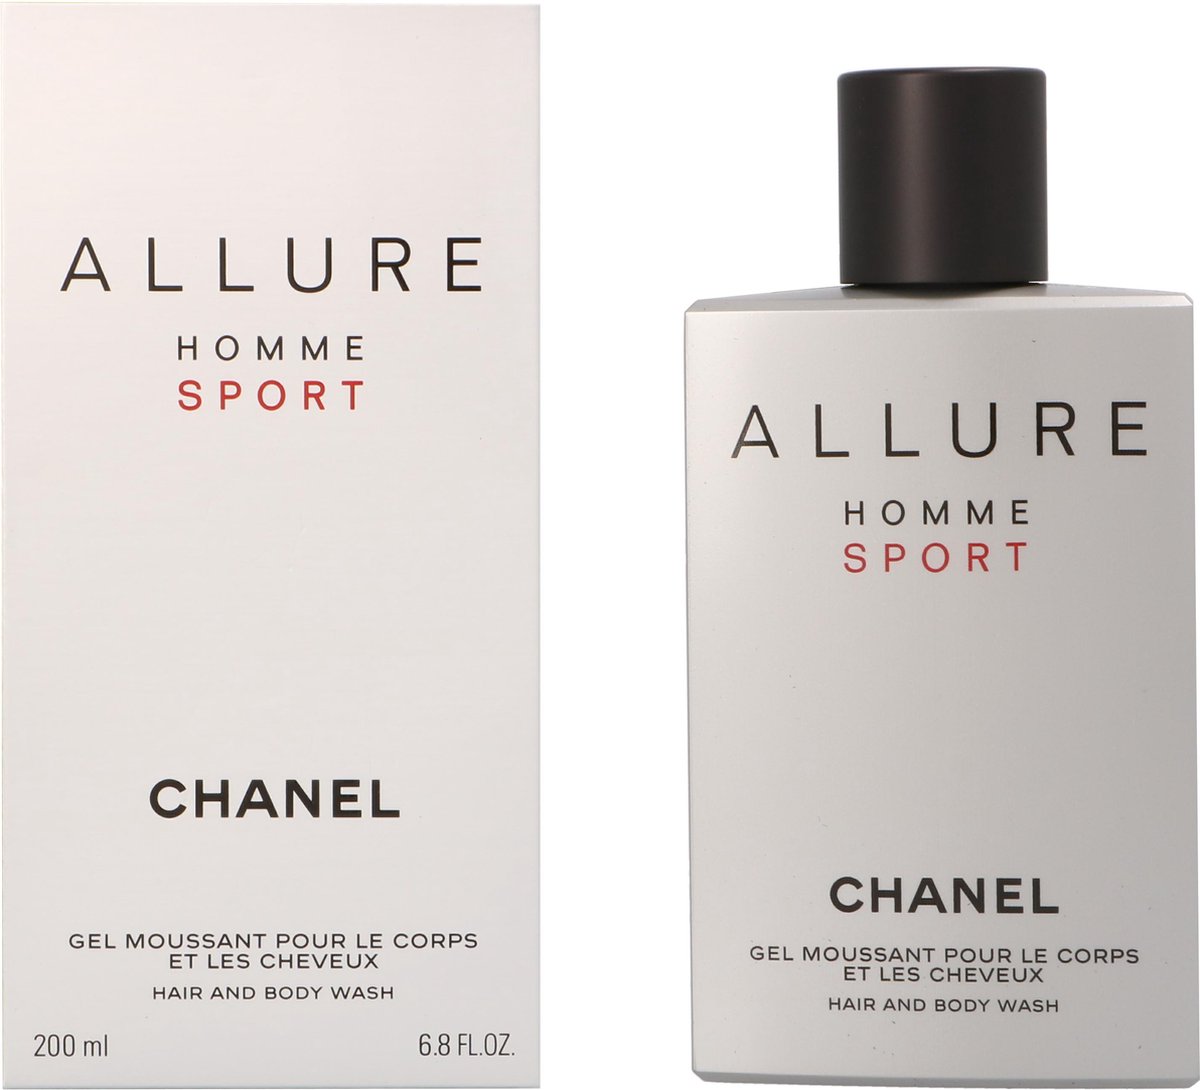 Chanel Allure Sport Homme Hair & Body Wash - 200 ml - Douchegel